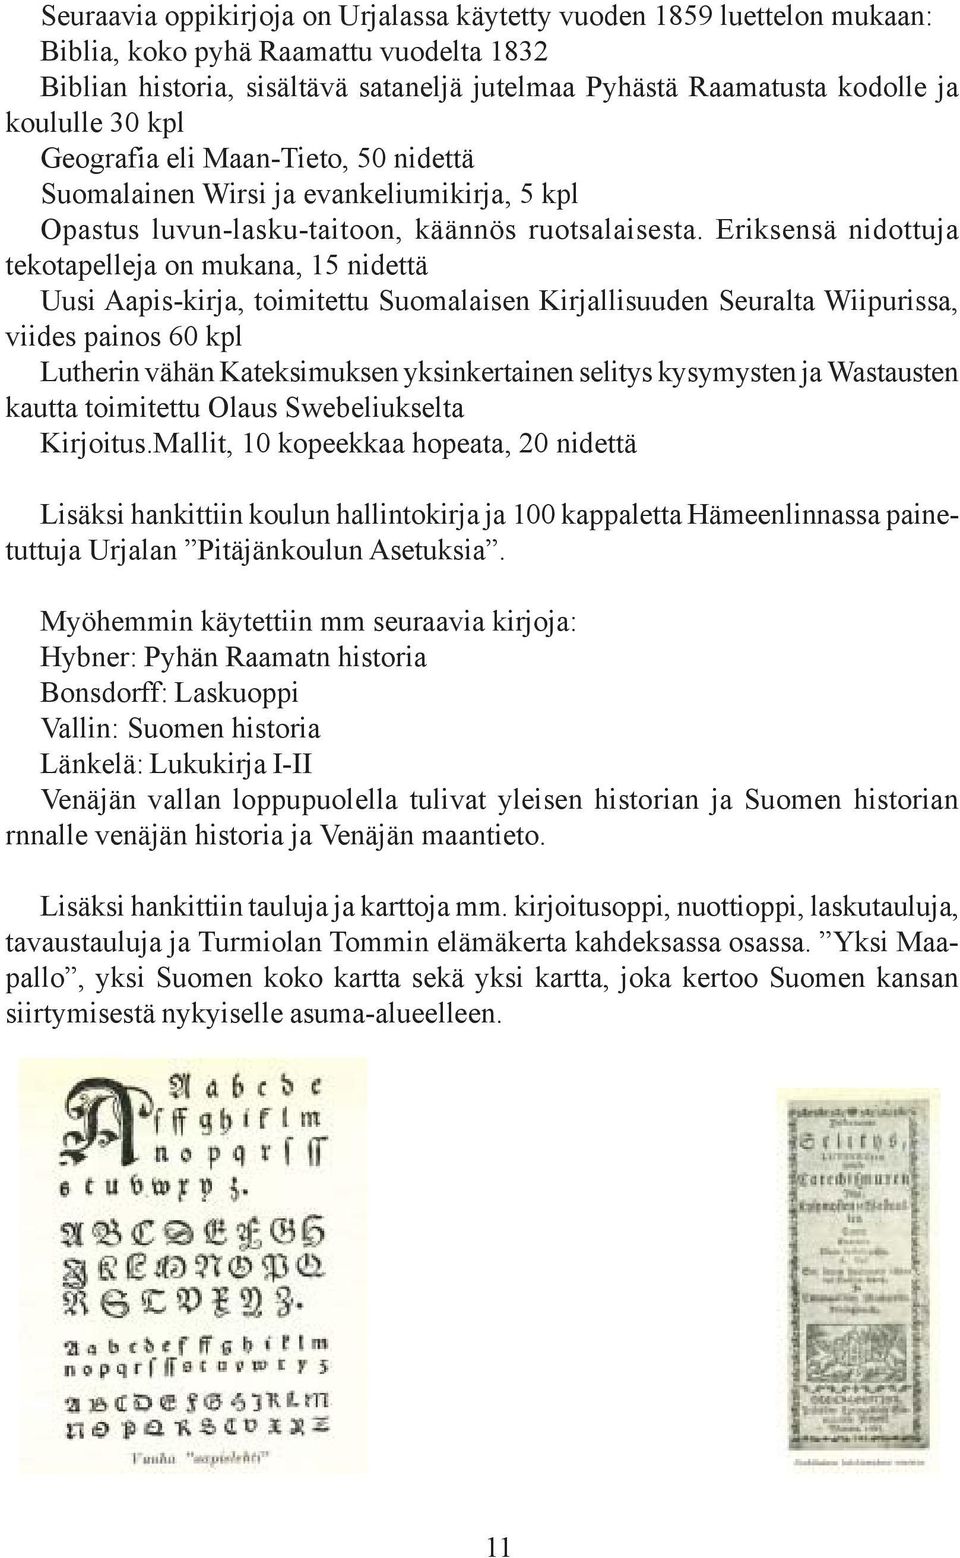 Eriksensä nidottuja tekotapelleja on mukana, 15 nidettä Uusi Aapis-kirja, toimitettu Suomalaisen Kirjallisuuden Seuralta Wiipurissa, viides painos 60 kpl Lutherin vähän Kateksimuksen yksinkertainen